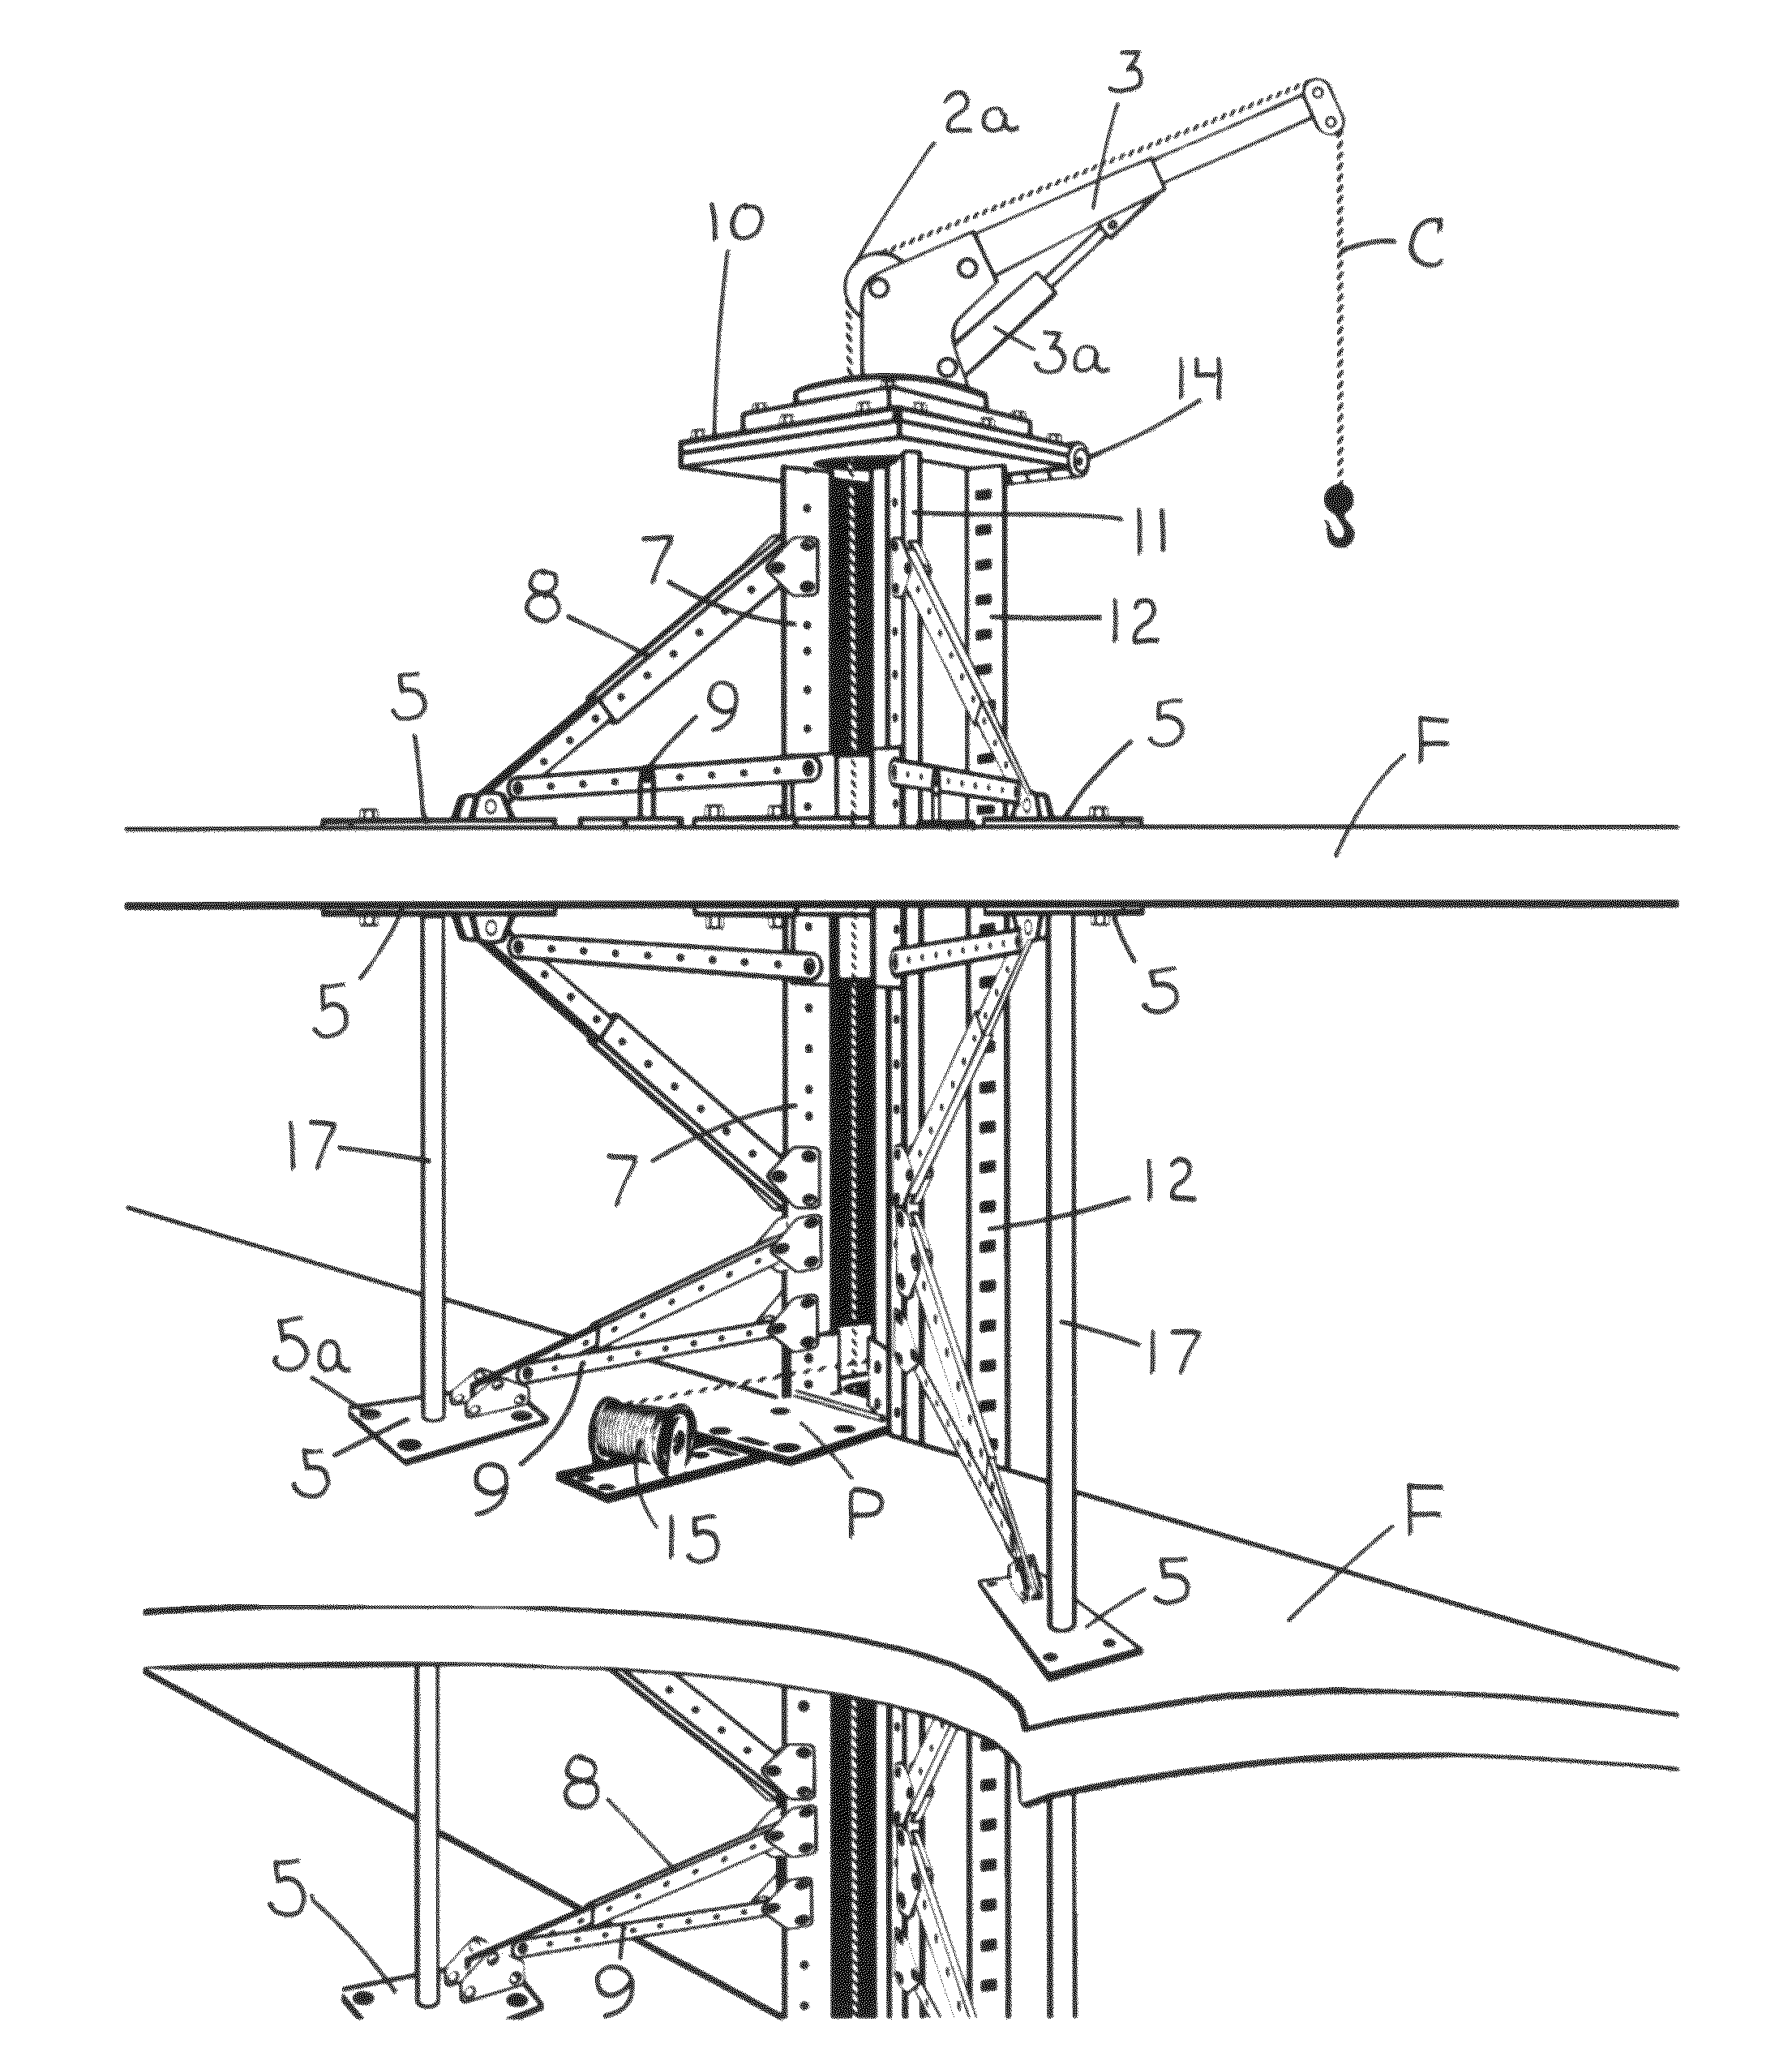 Self-climbing hoist, deck and scaffold platform system